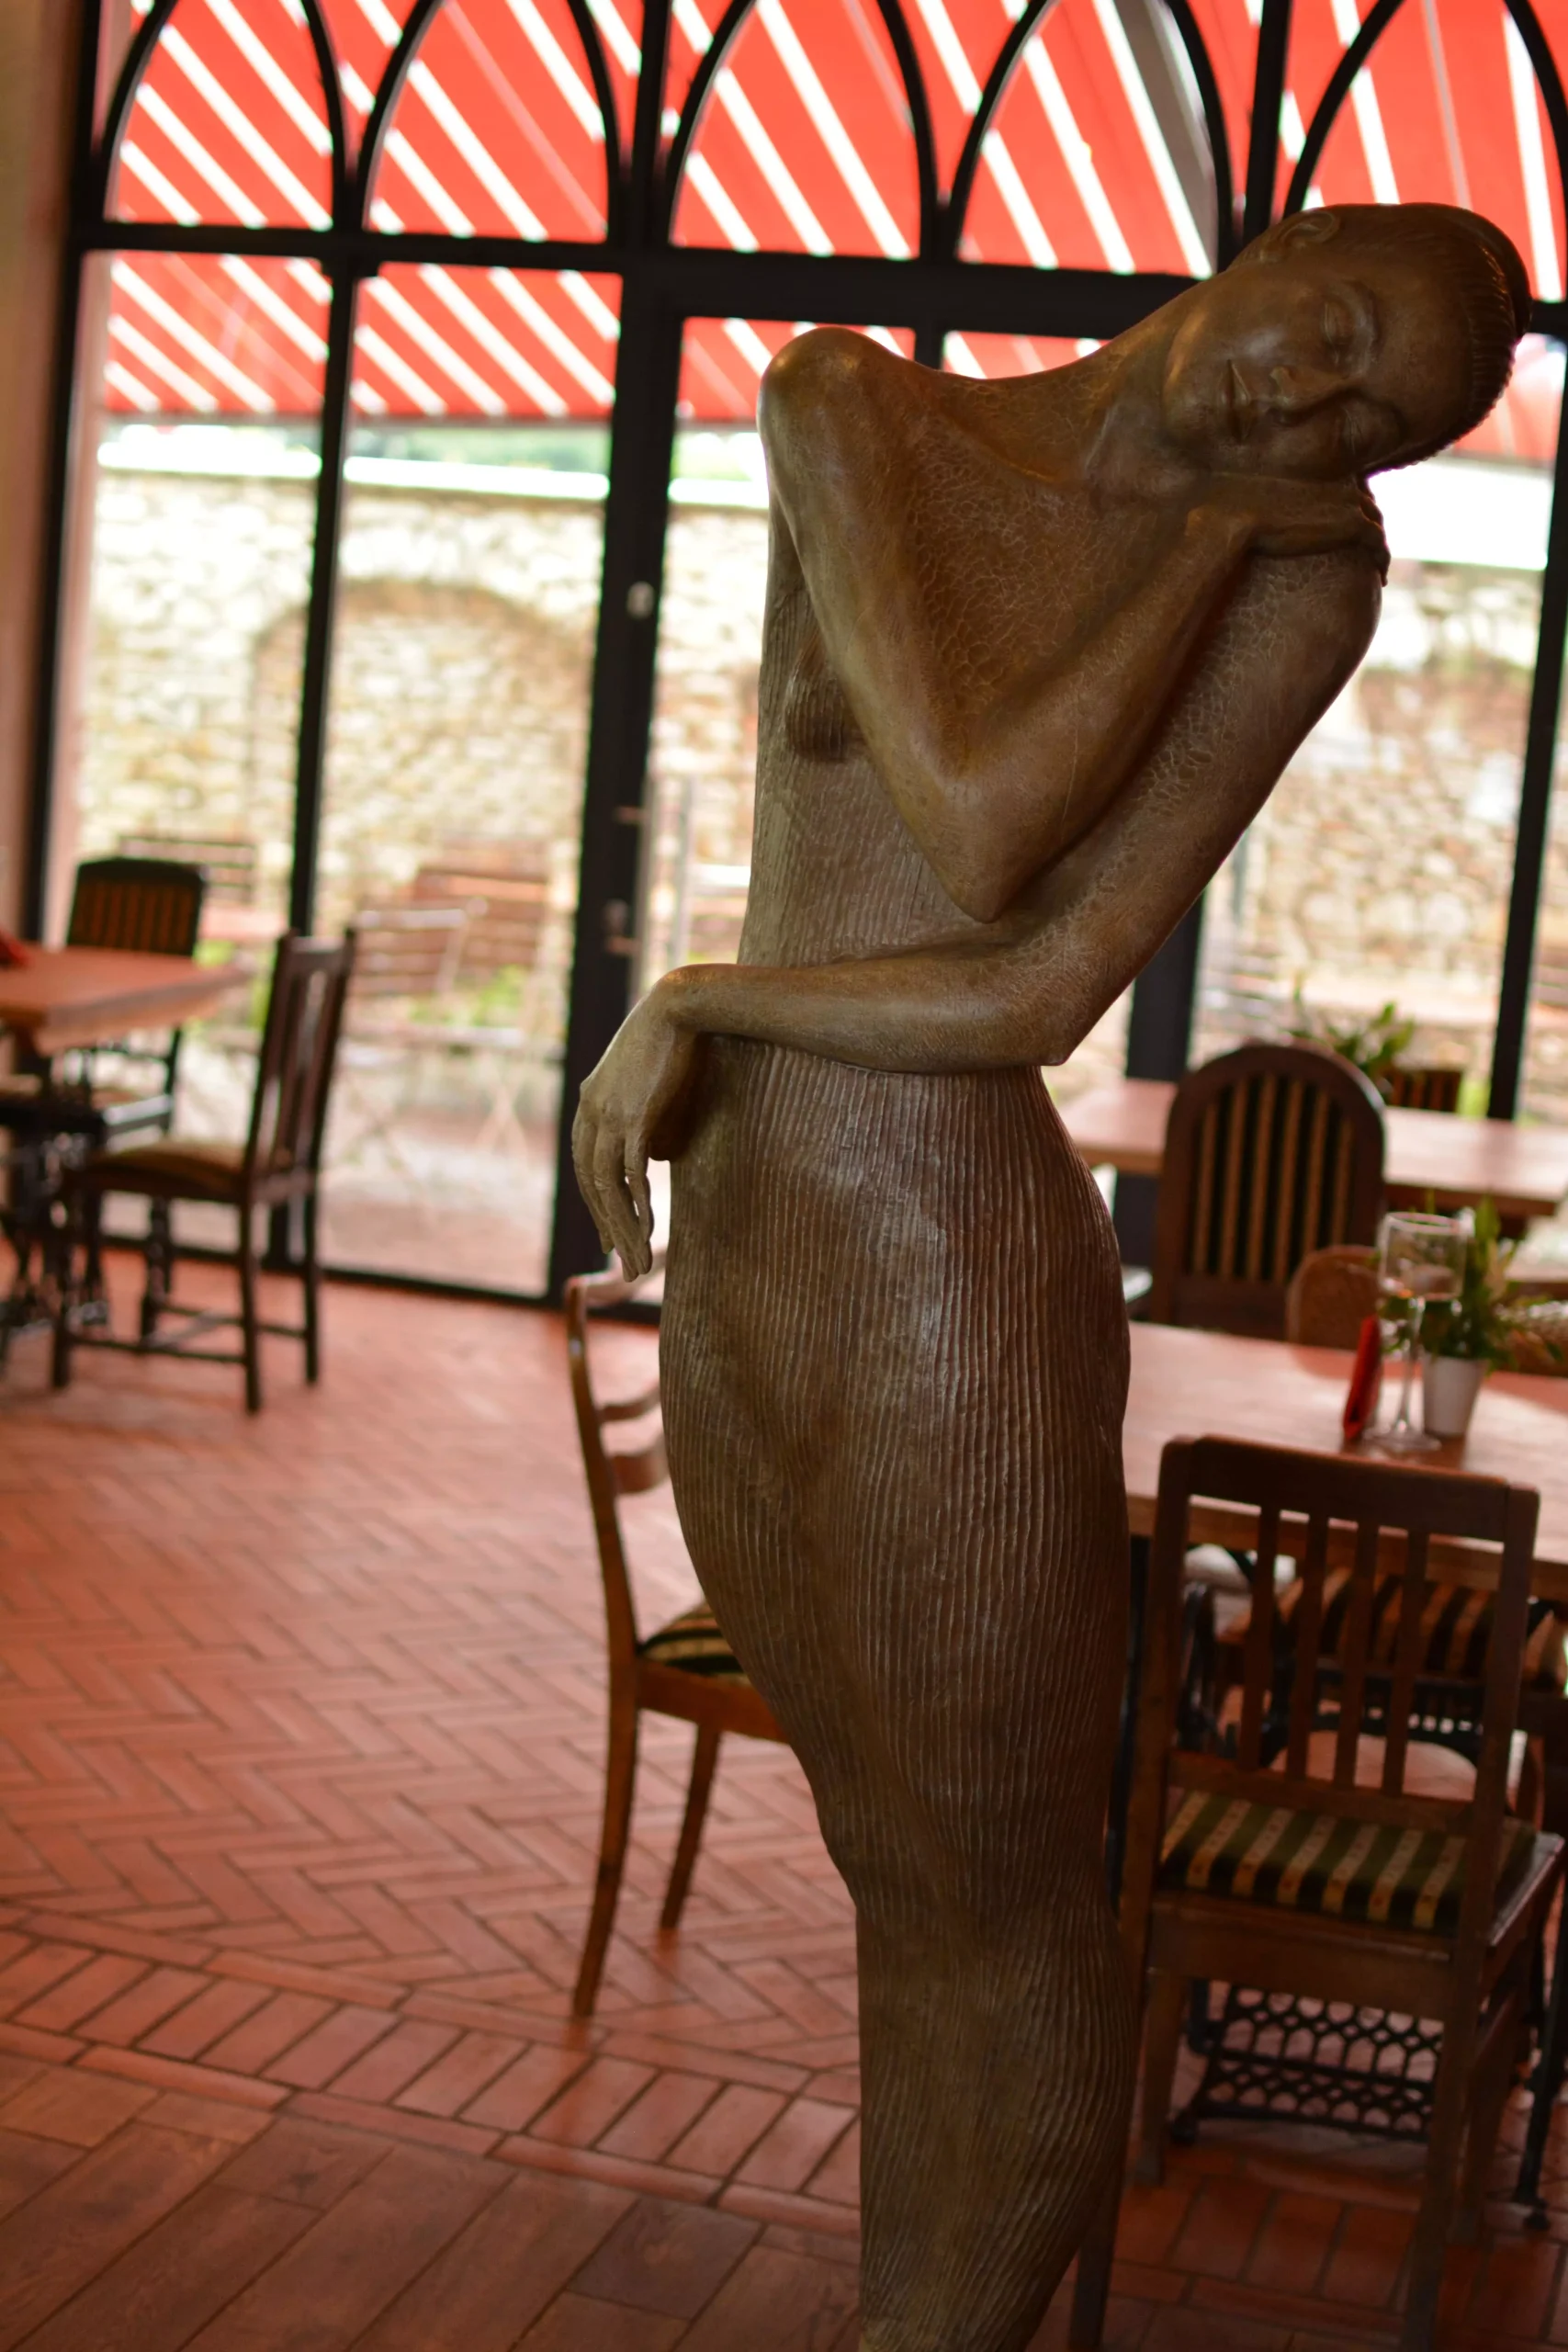 Rzeźba Małgorzaty Chodakowskiej "Bella Figura" w Poddębicach